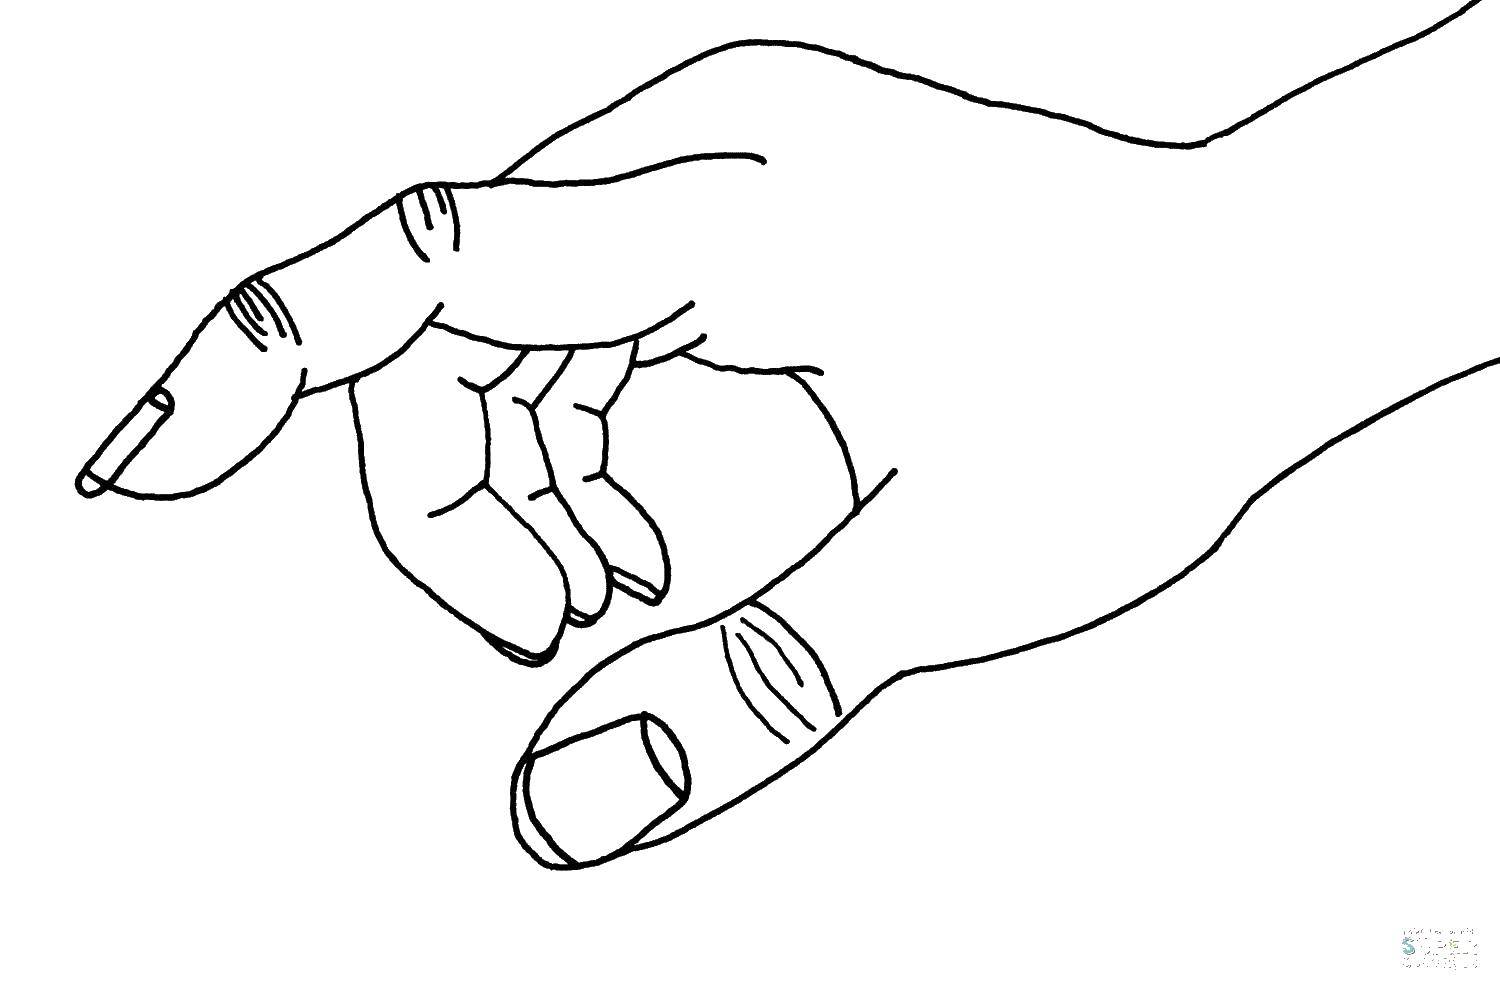 Контур руки и ладошки для вырезания пальцы, ногти, ладонь - раскраска развития мелкой моторики (контур, ладонь, вырезание, пальцы, ногти)